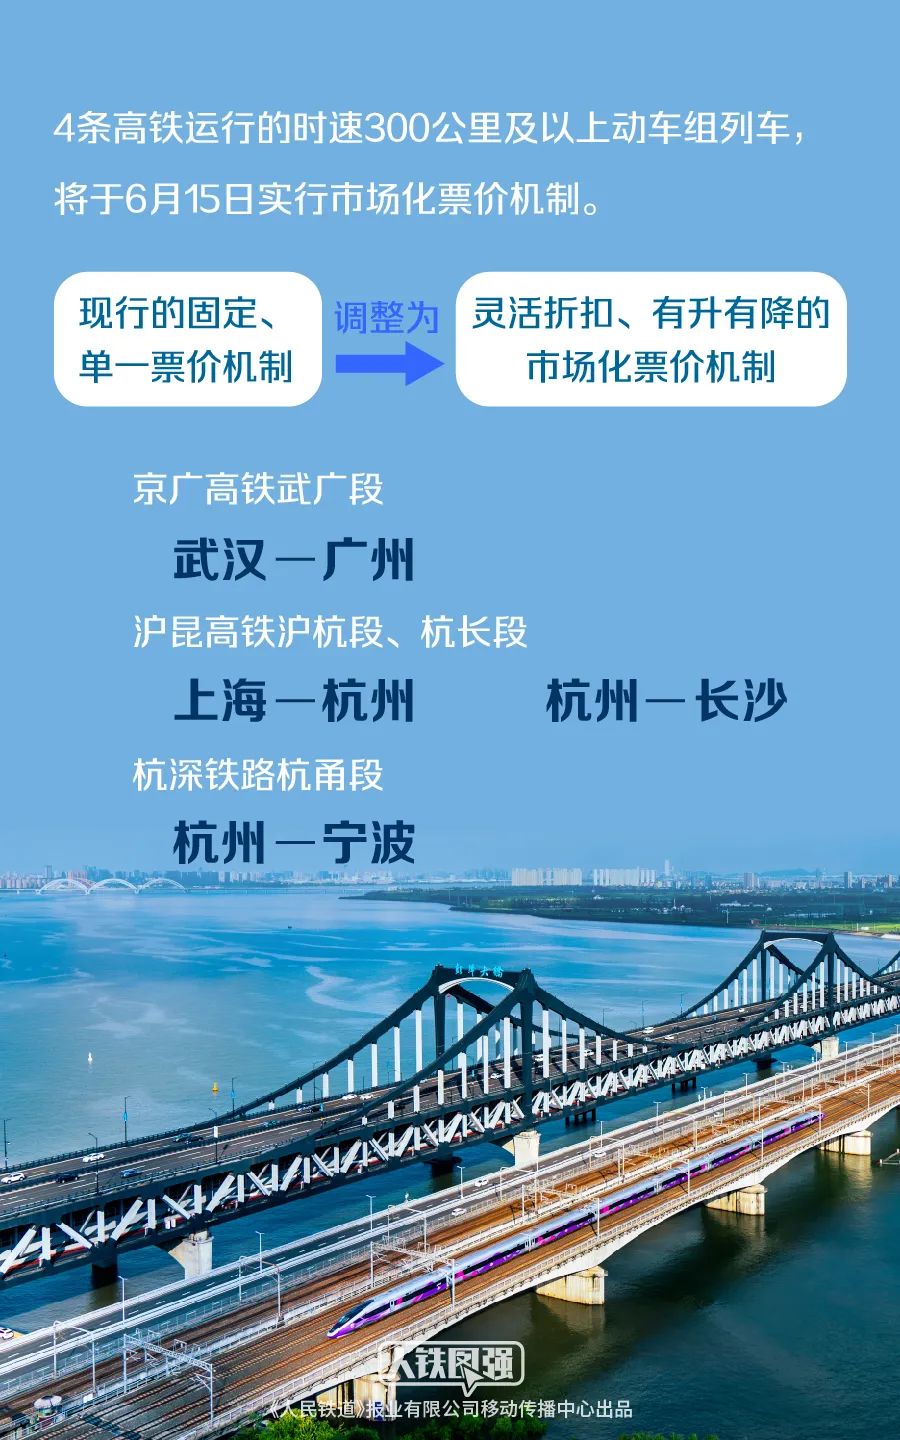 中国铁路:6月1日开售实行市场化票价机制的4条高铁车票